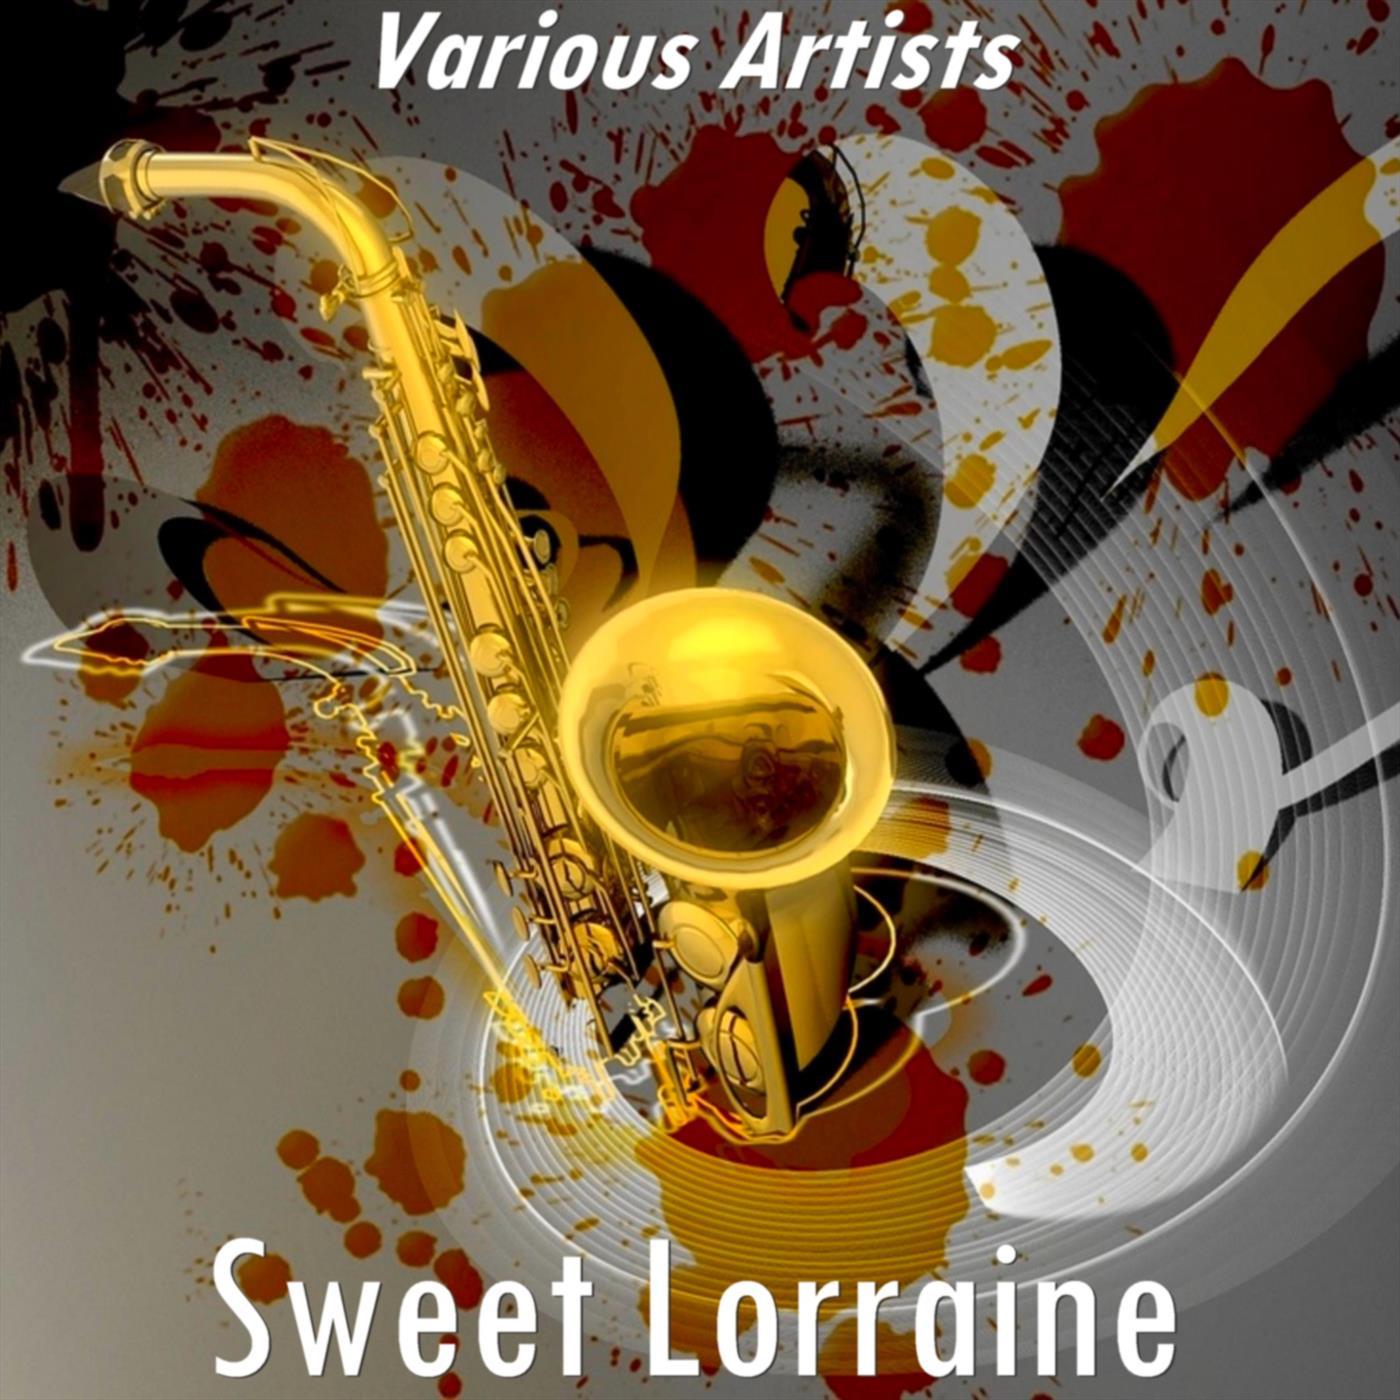 Louis Jordan and his Tympany Five - Sweet Lorraine (Version by Louis Jordan and His Tympany Five)